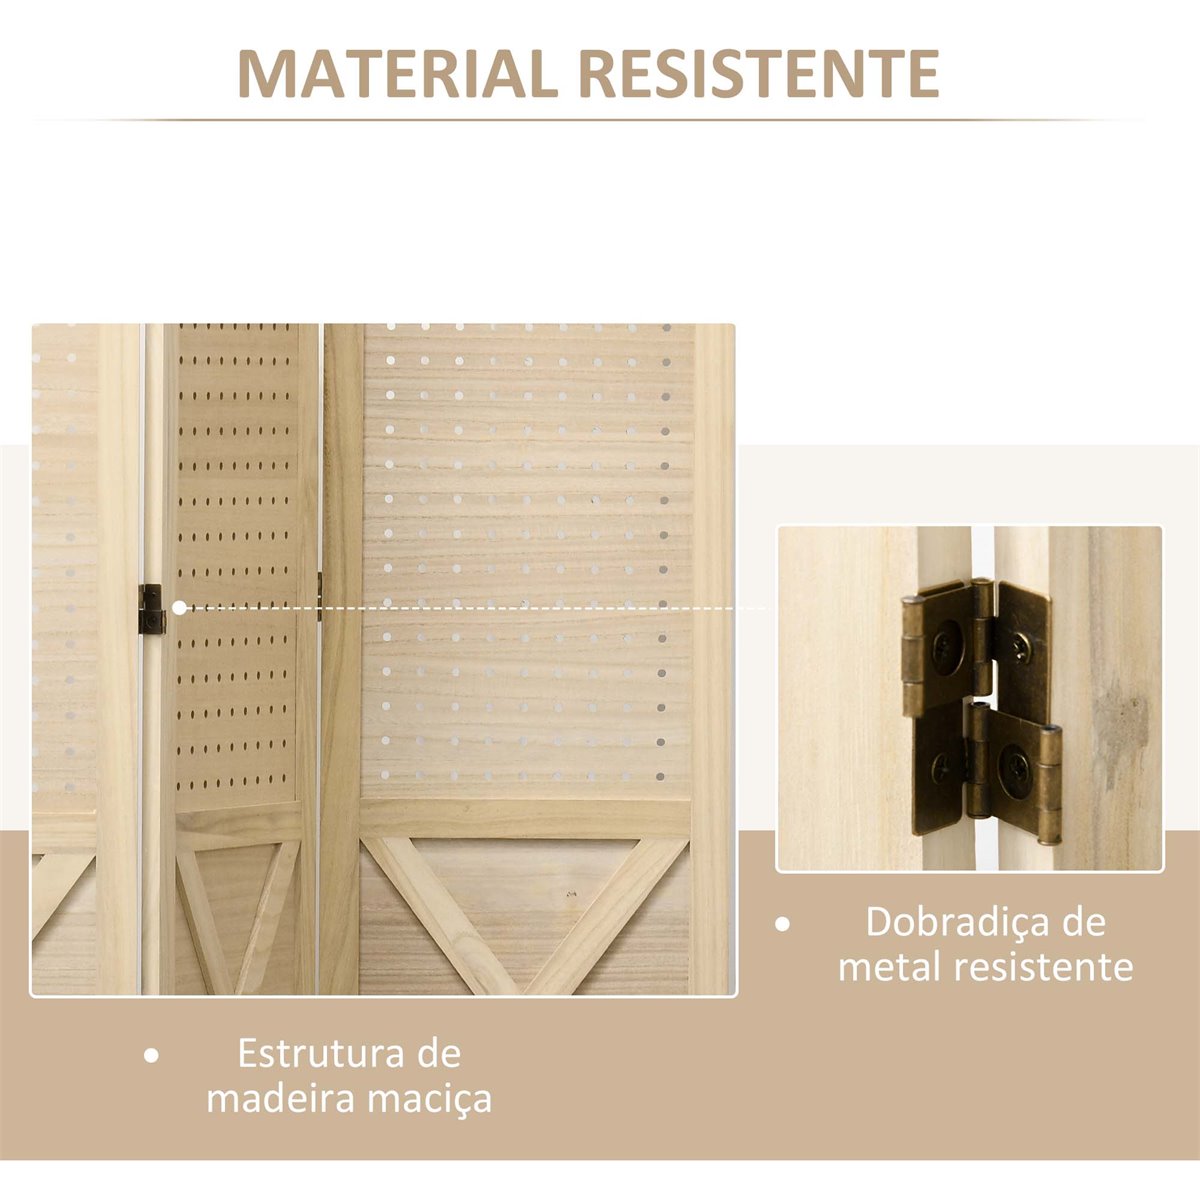 HOMCOM Biombo de 4 Paneles de Bambú Separador de Ambientes Plegable Divisor  de Espacios para Dormitorio Salón 180x180x1,9 cm Marrón y Negro - Conforama